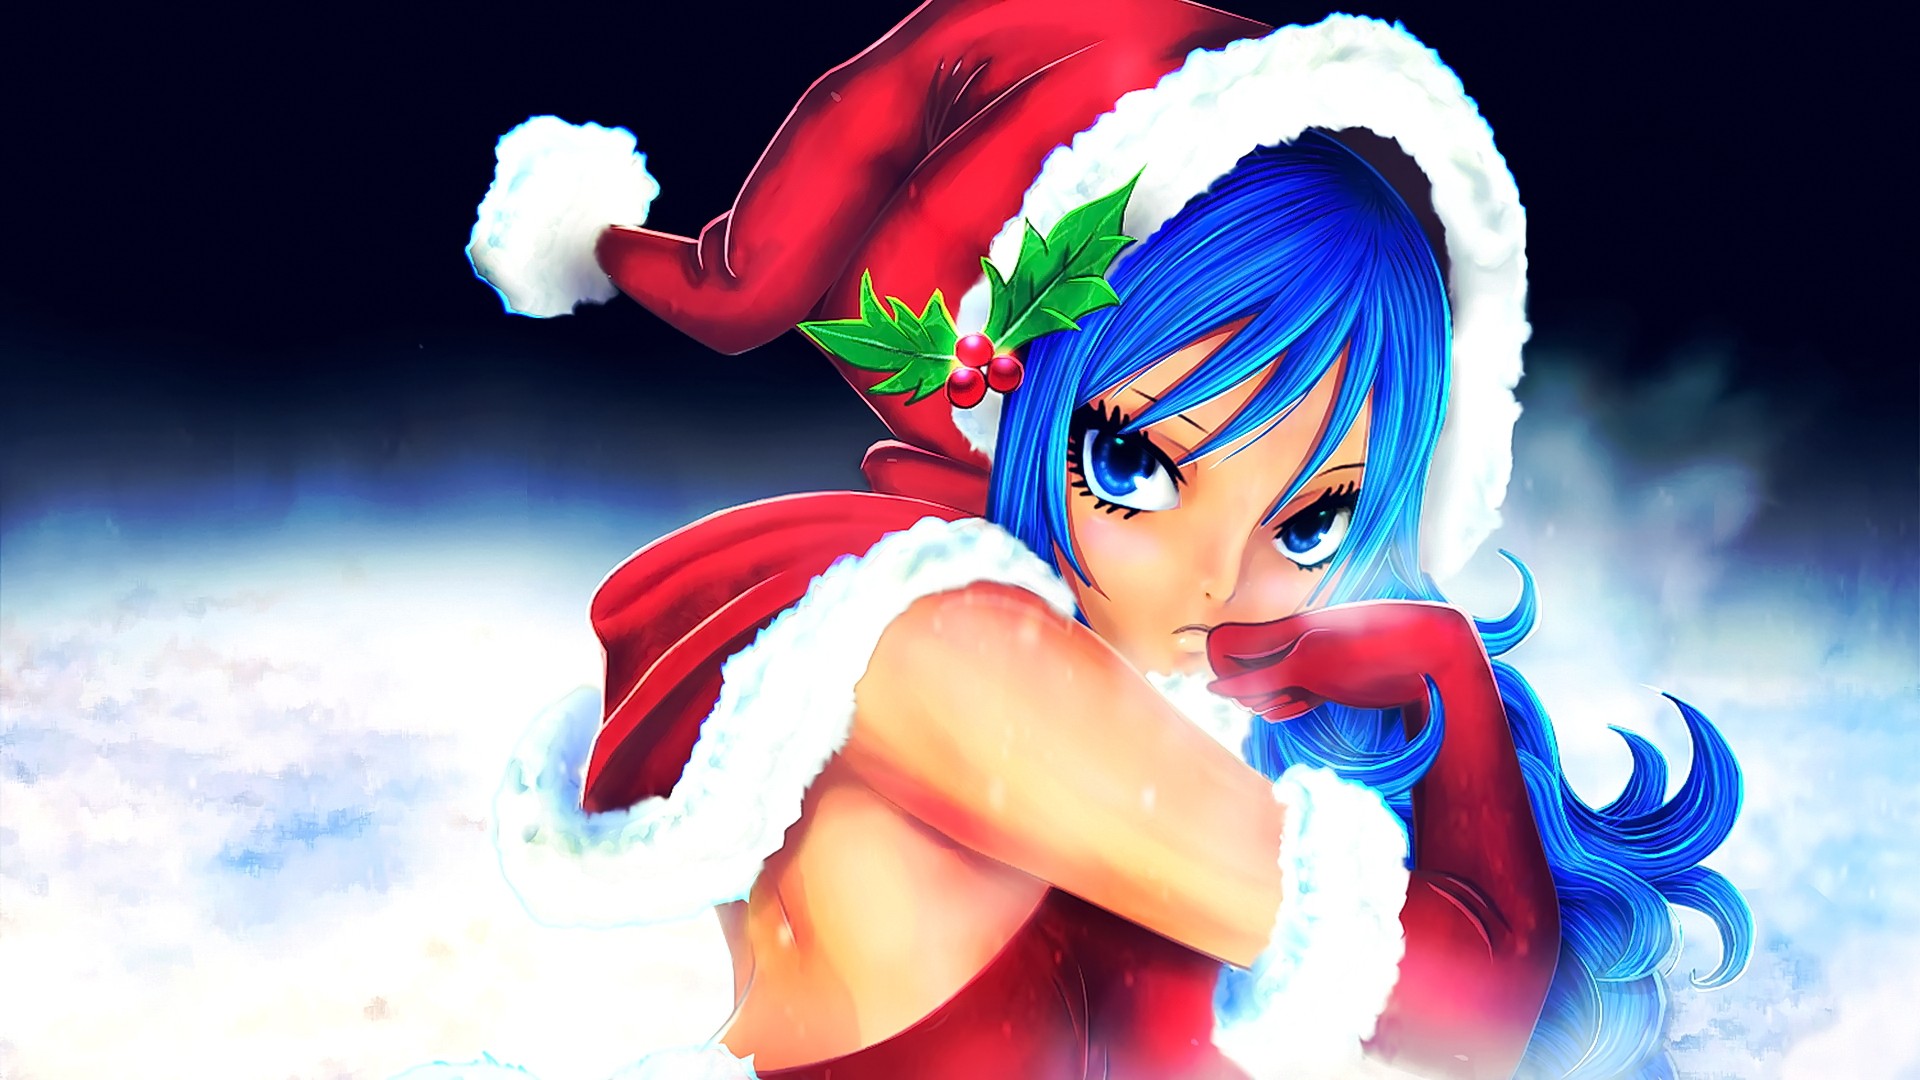 Anime Anime Girls Christmas Blue Hair Lockser Juvia Fairy Tail 1920x1080